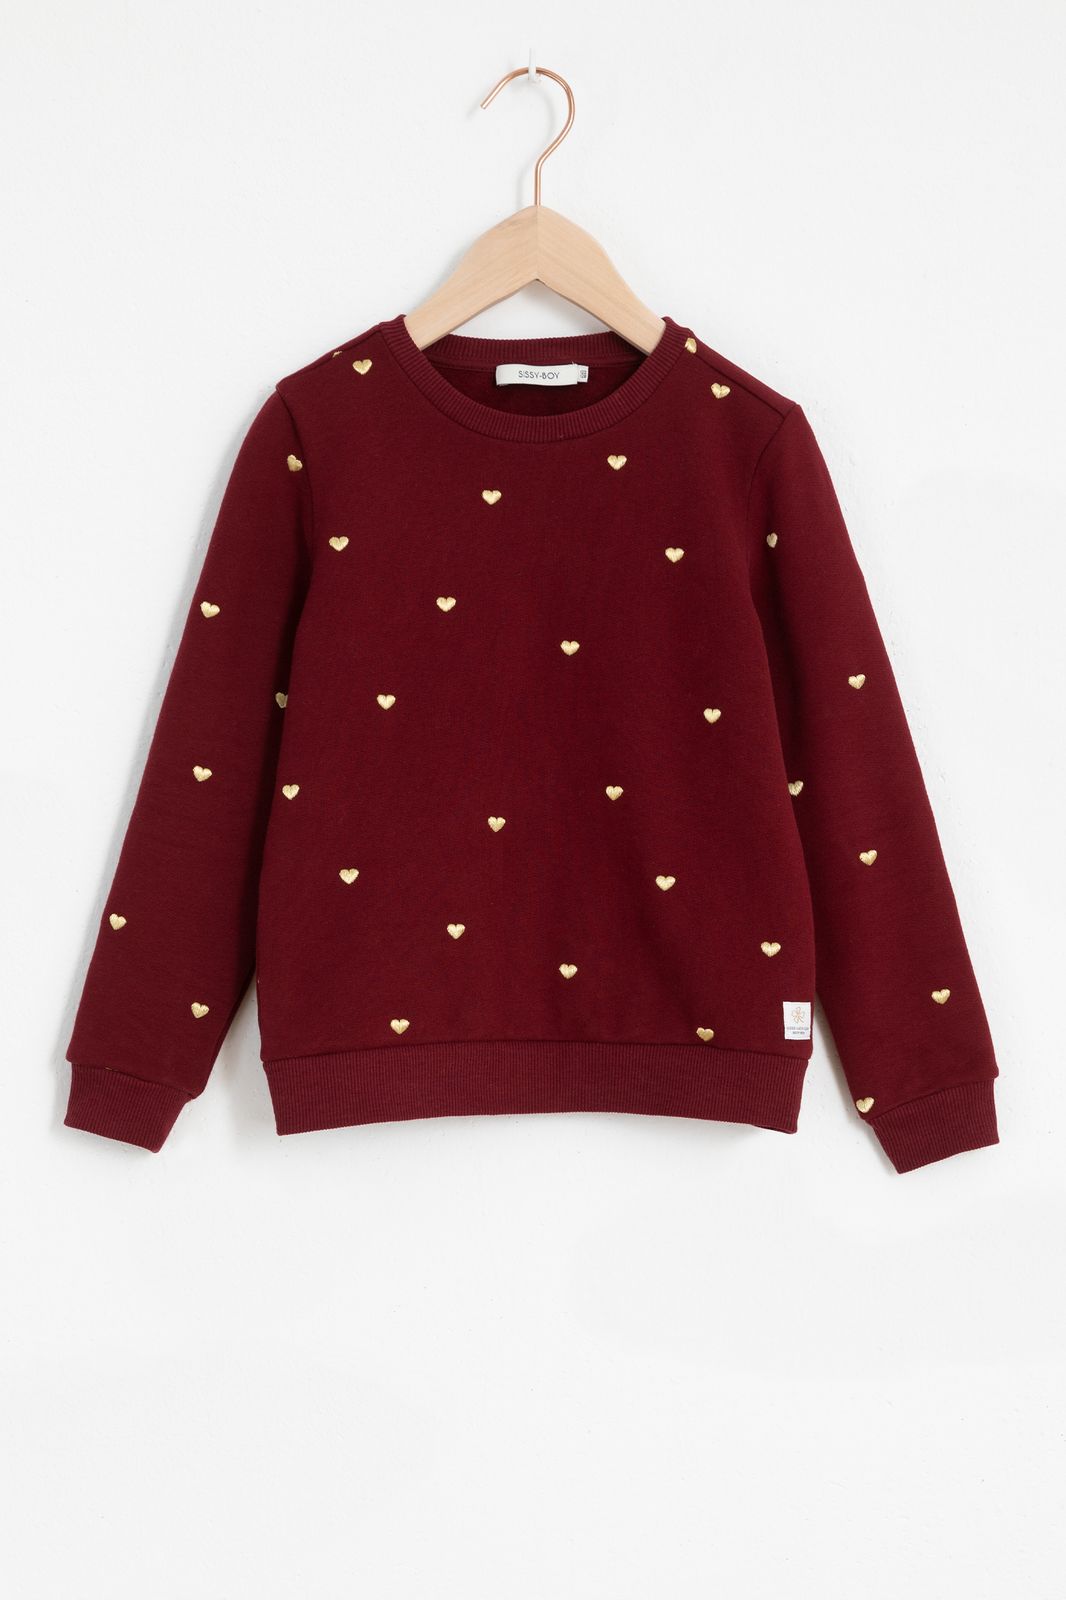 Sweater mit Herzen - dunkelrot